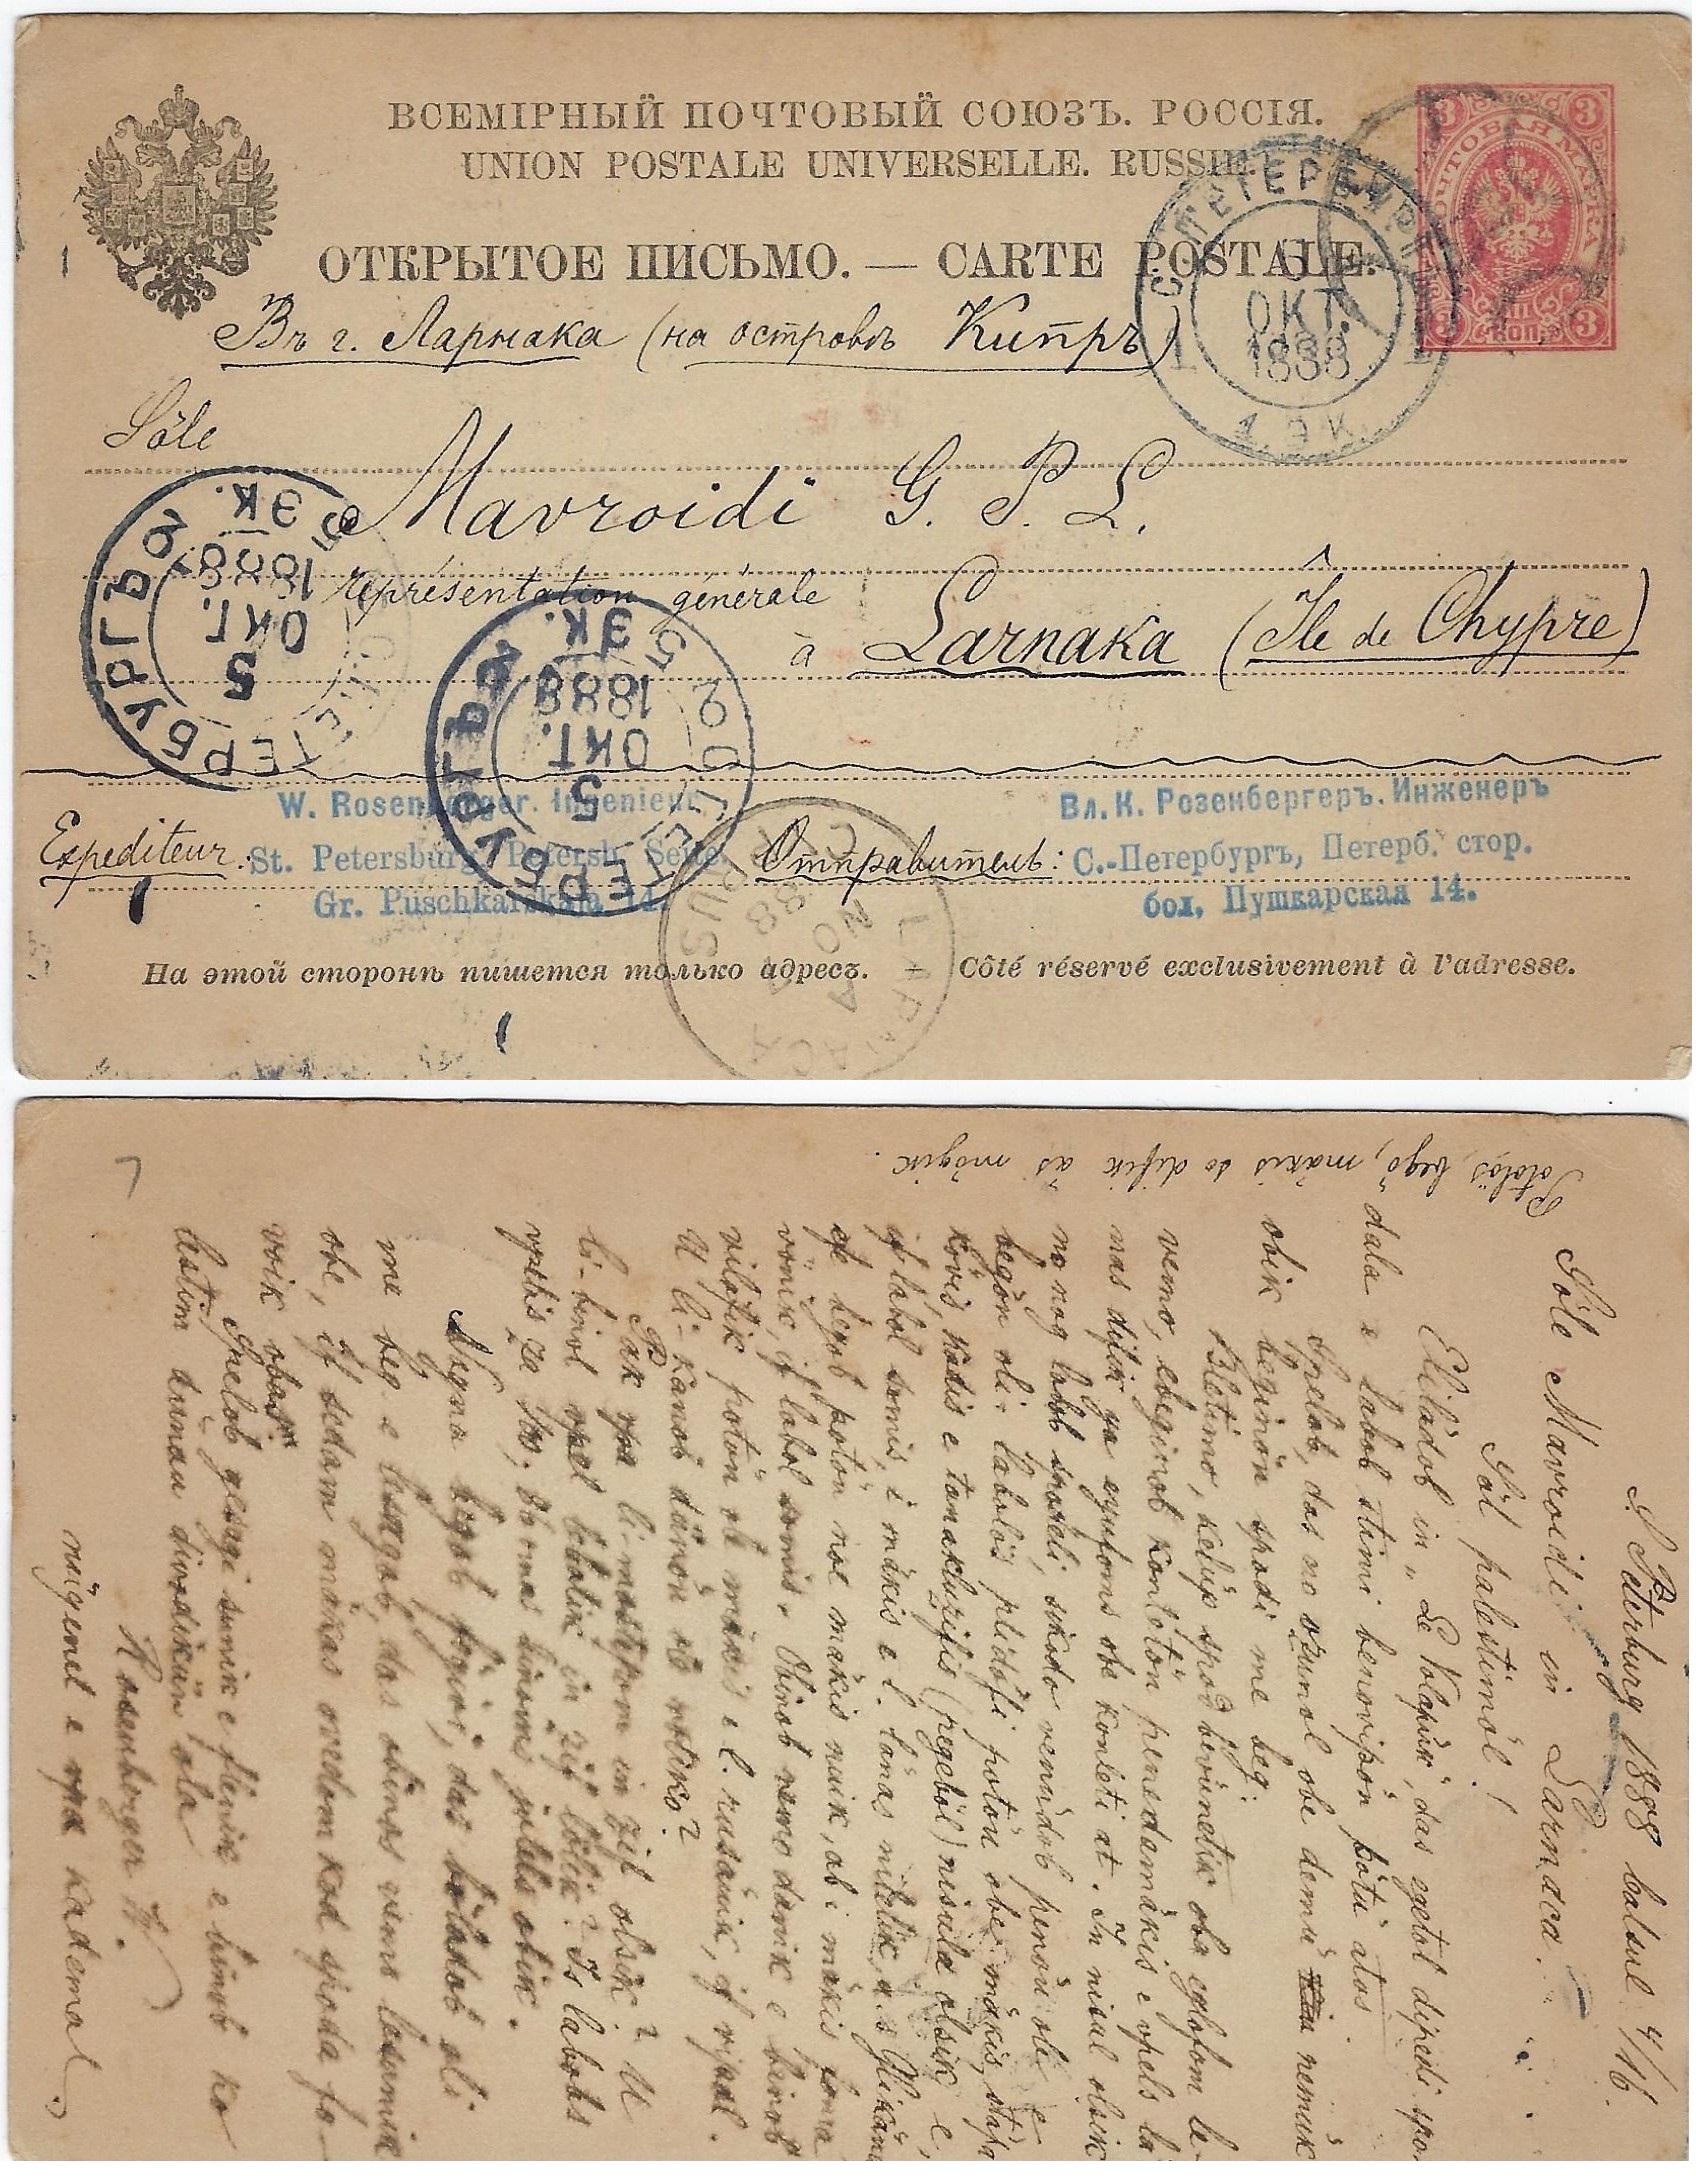 Russia Postal History - Unusual Destinations. Unusual destinations Scott 1891 